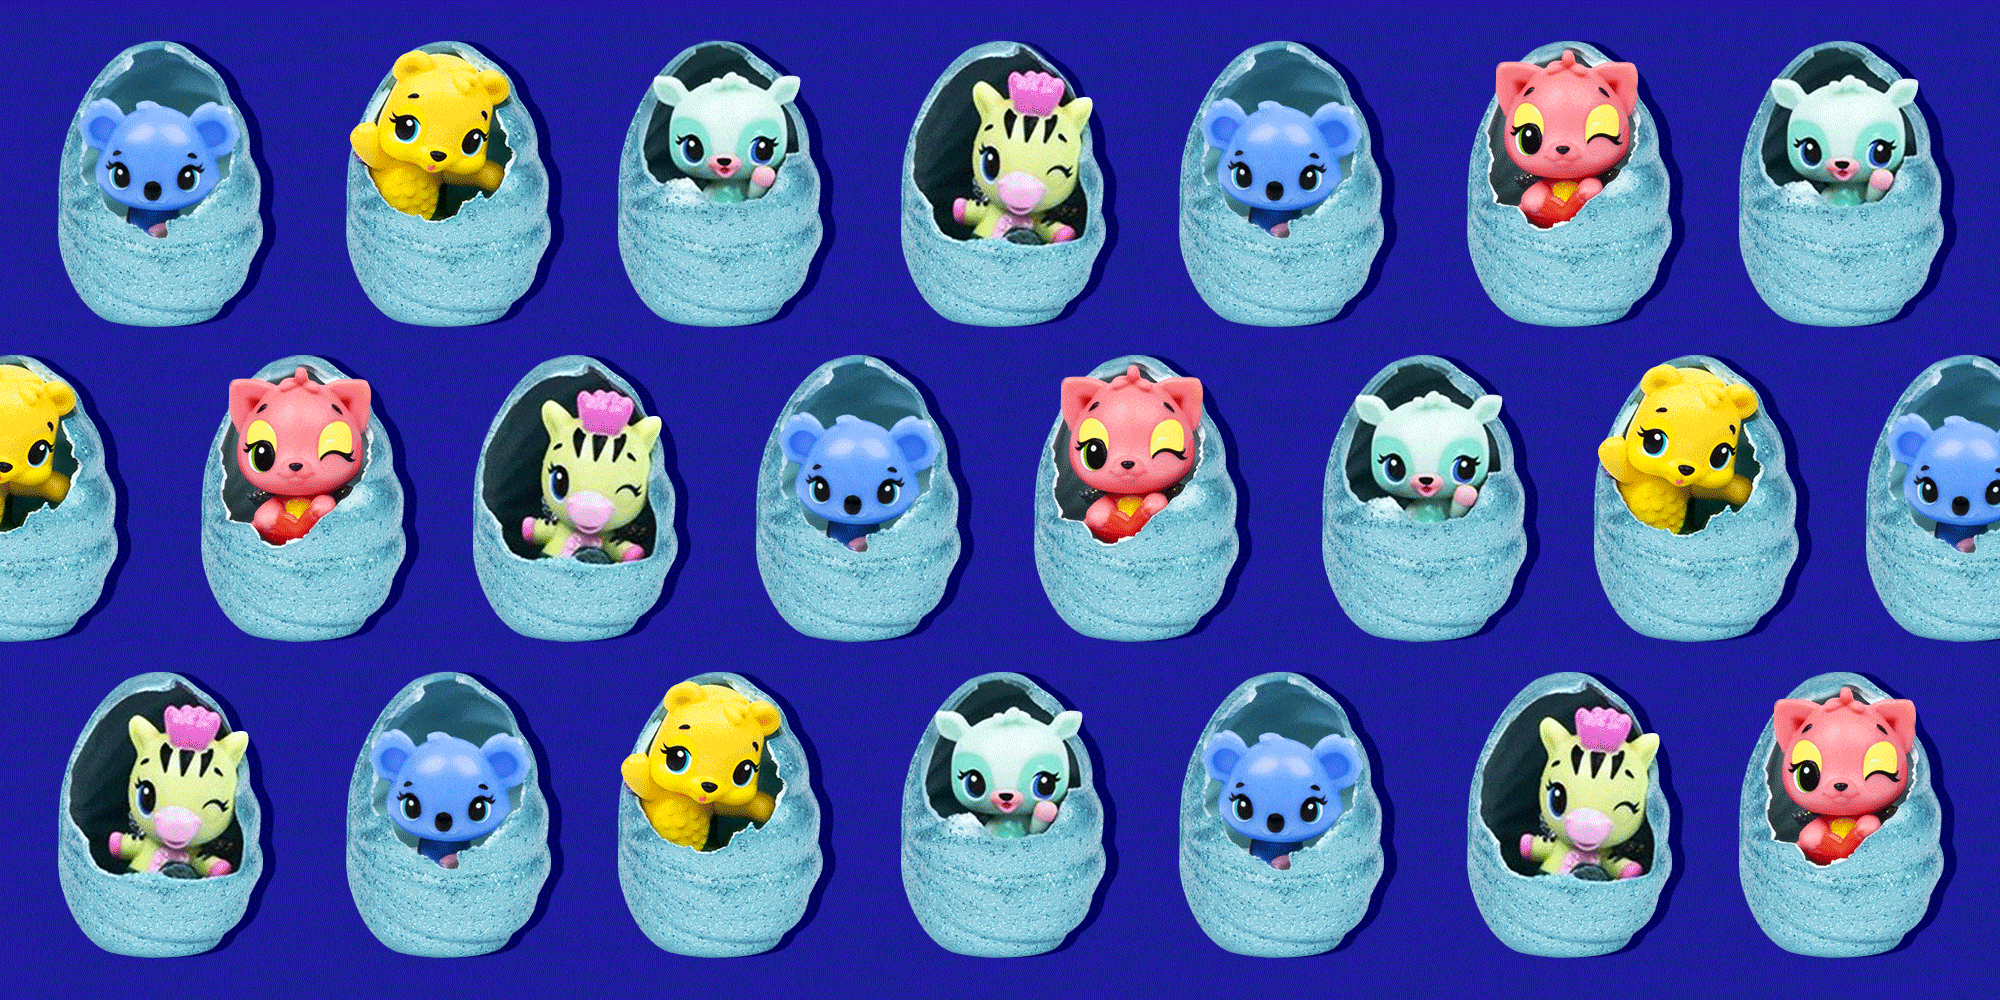 coolest kinder egg toys